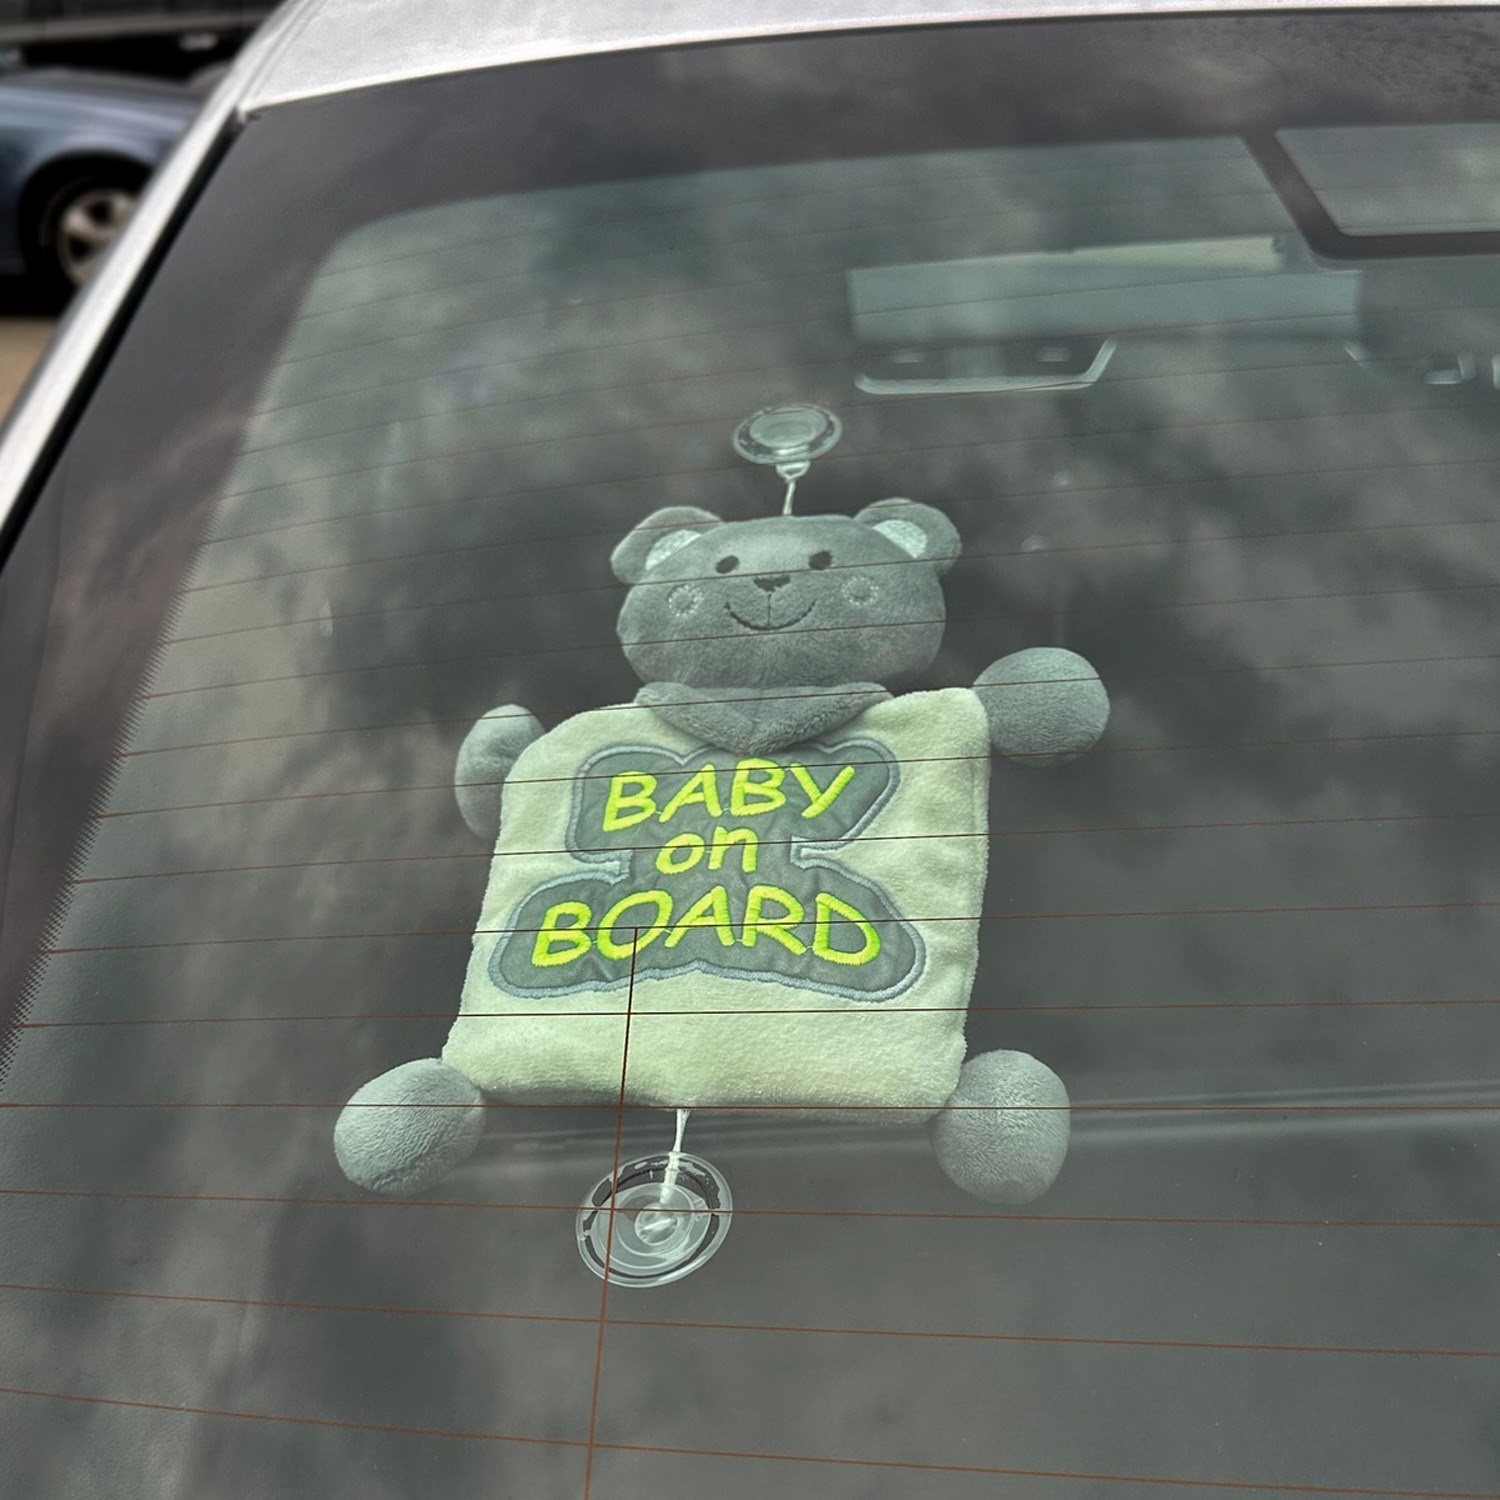 BabyJem Reflektörlü Arabada Bebek Var Aparatı 875 Gri